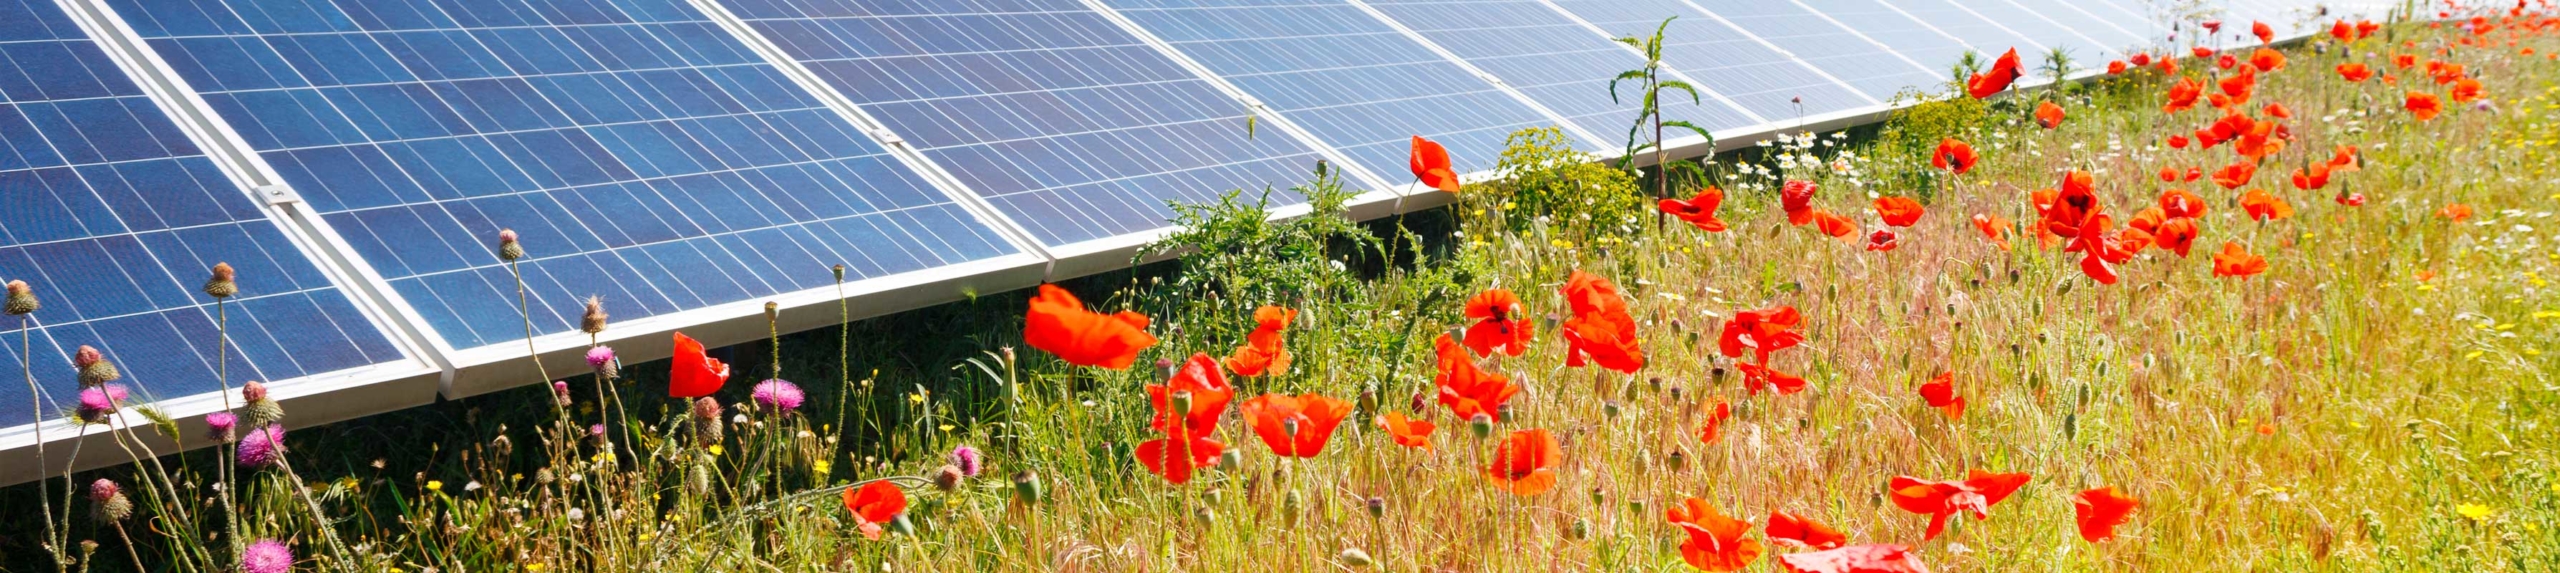 Feiten over zonne-energie Zonnepark met bloemen